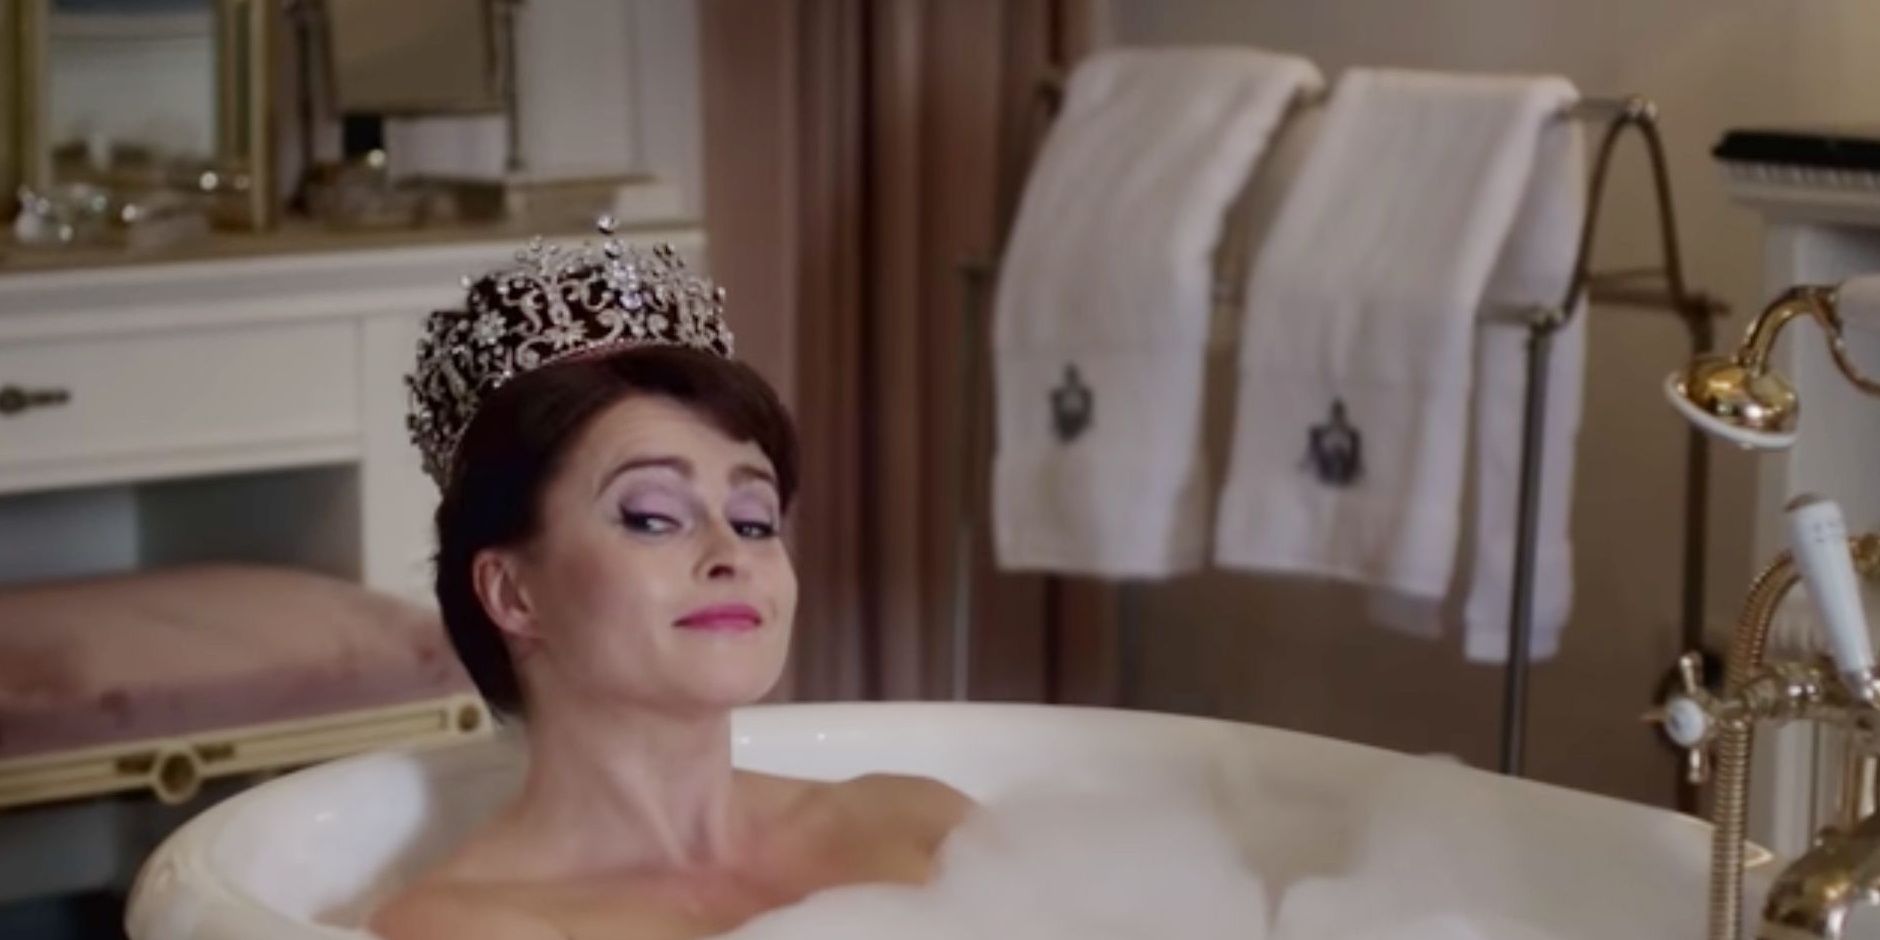 La corona debe etiquetarse como ficción, dice Helena Bonham Carter